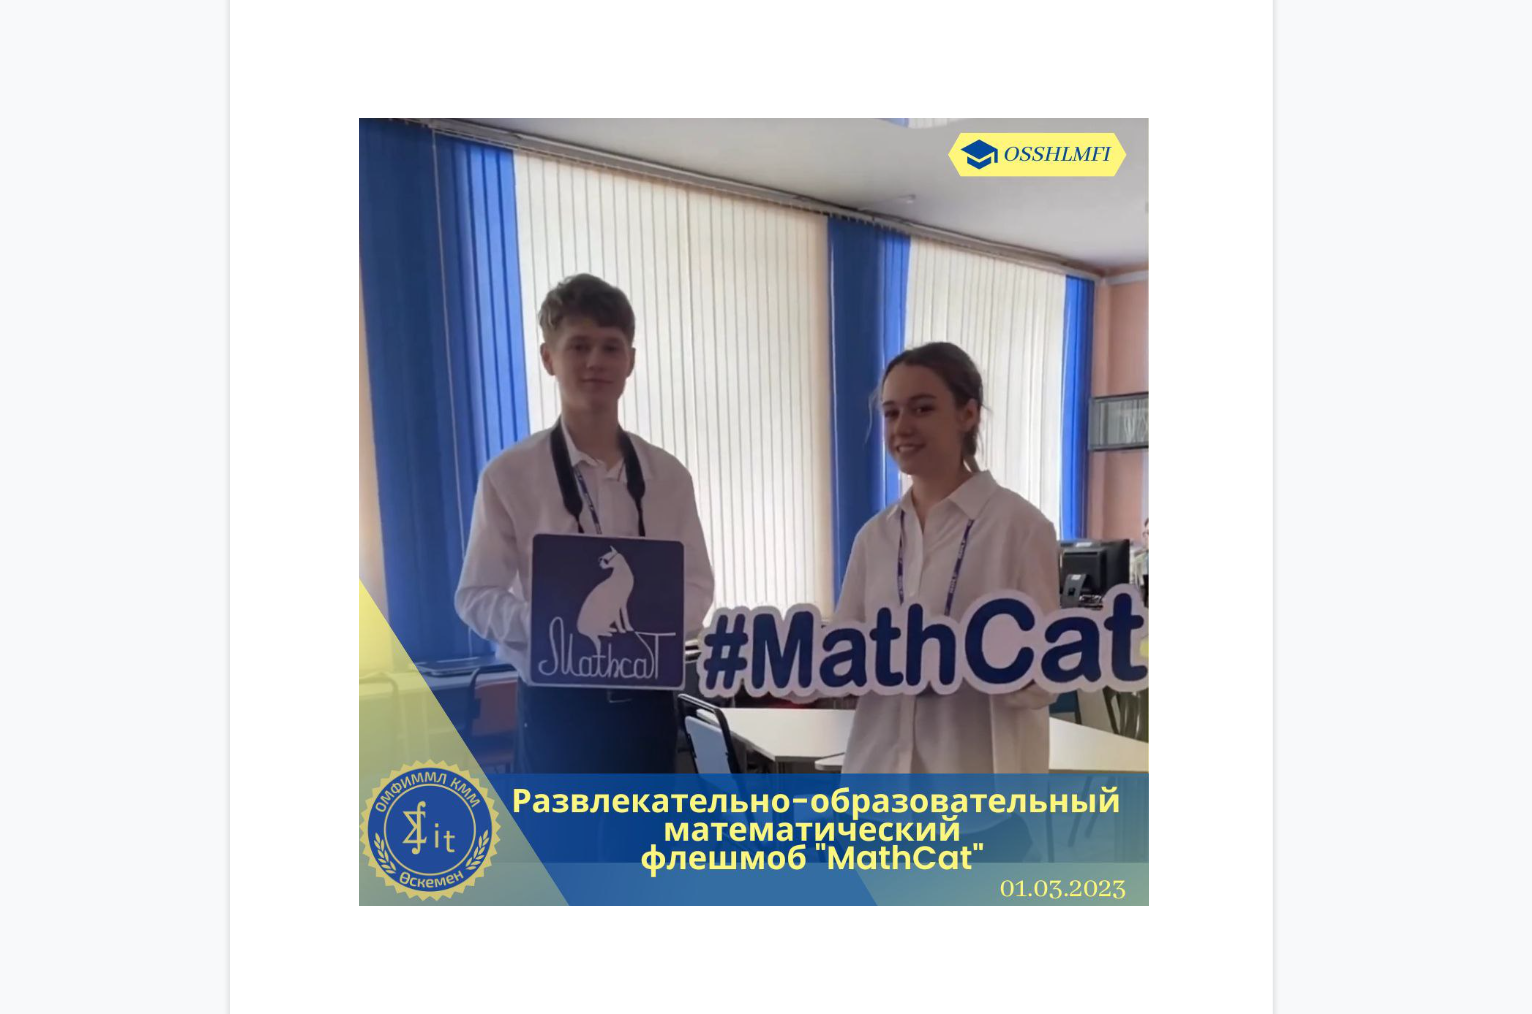 Развлекательно-образовательный математический флешмоб "MathCat"